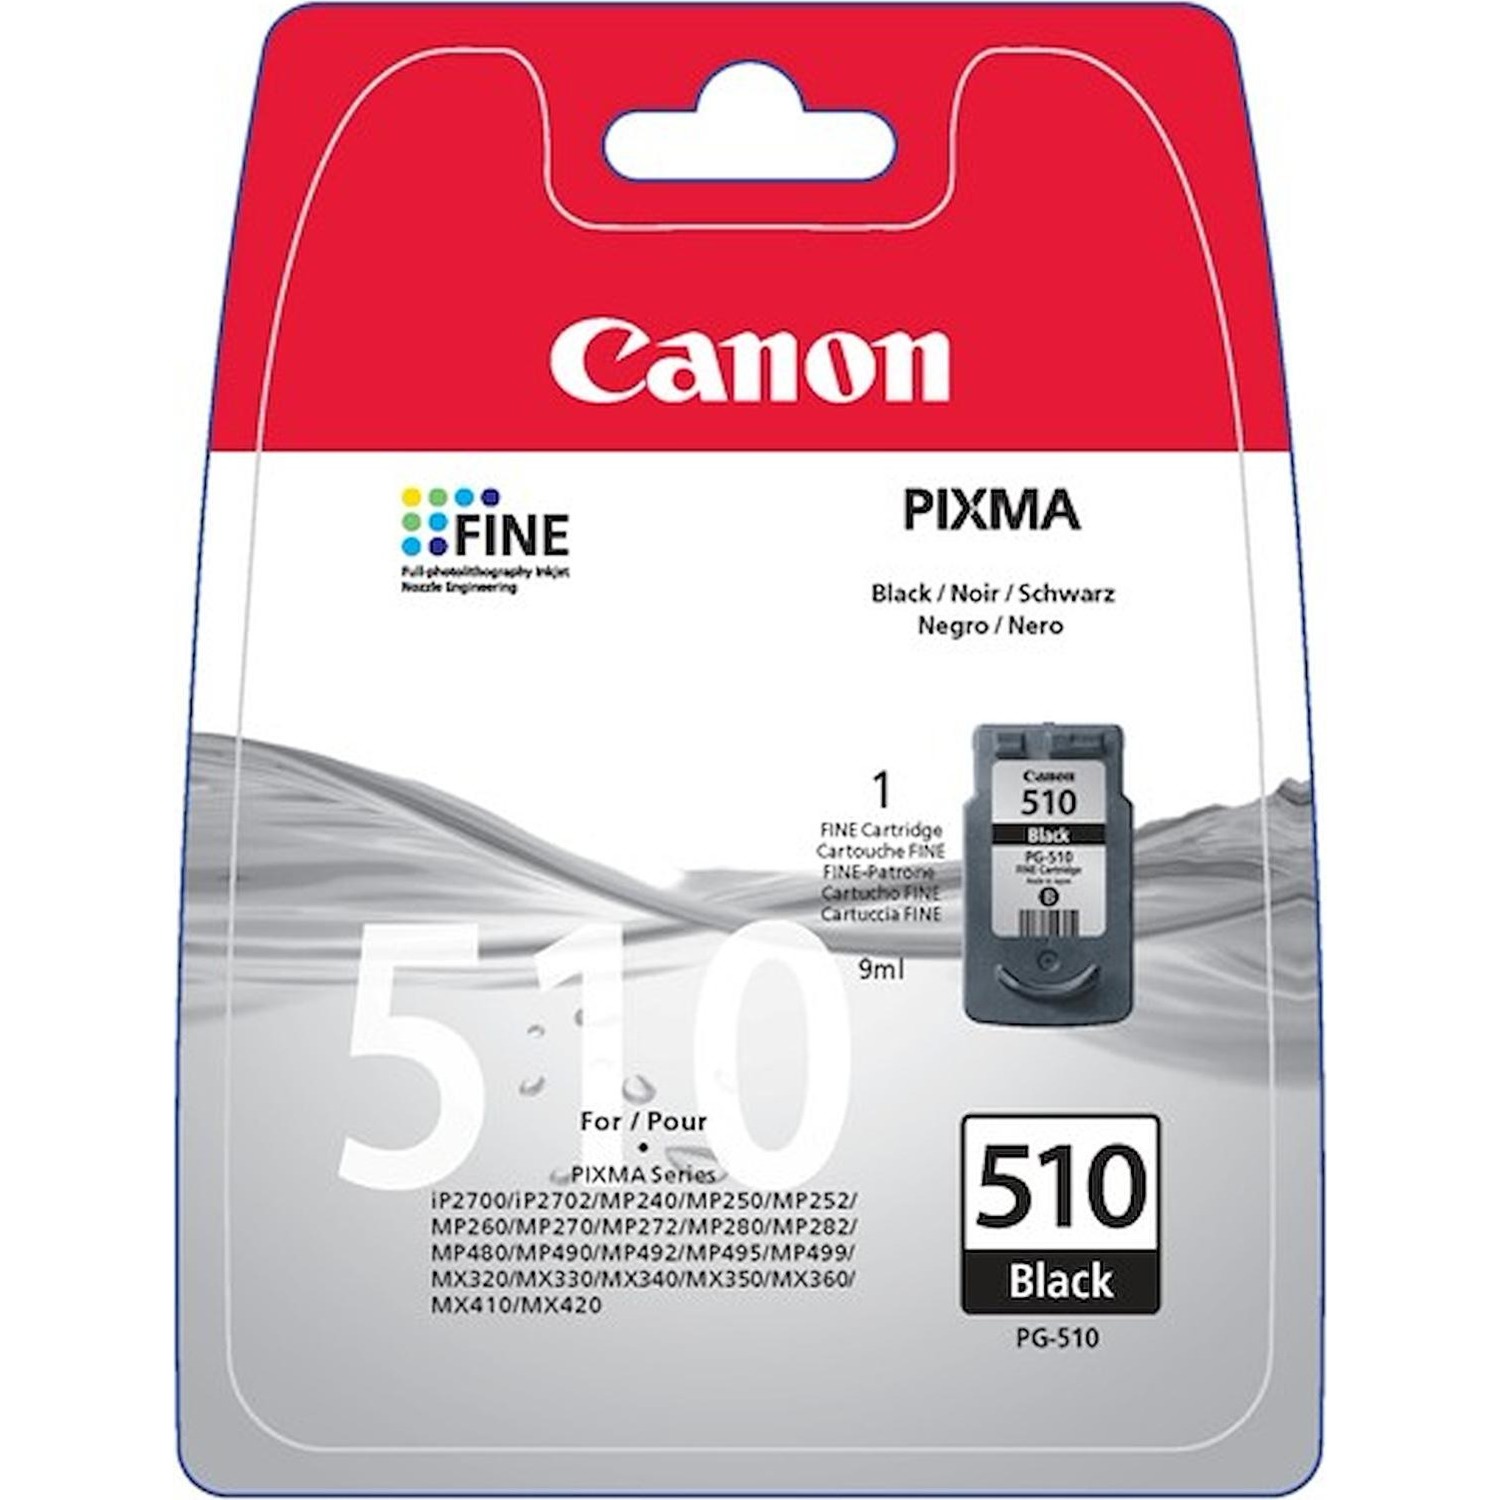 Immagine per Cartuccia Canon PG510 nero                        per PIXMA MP230 PIXMA MP240 PIXMA MP260 da DIMOStore